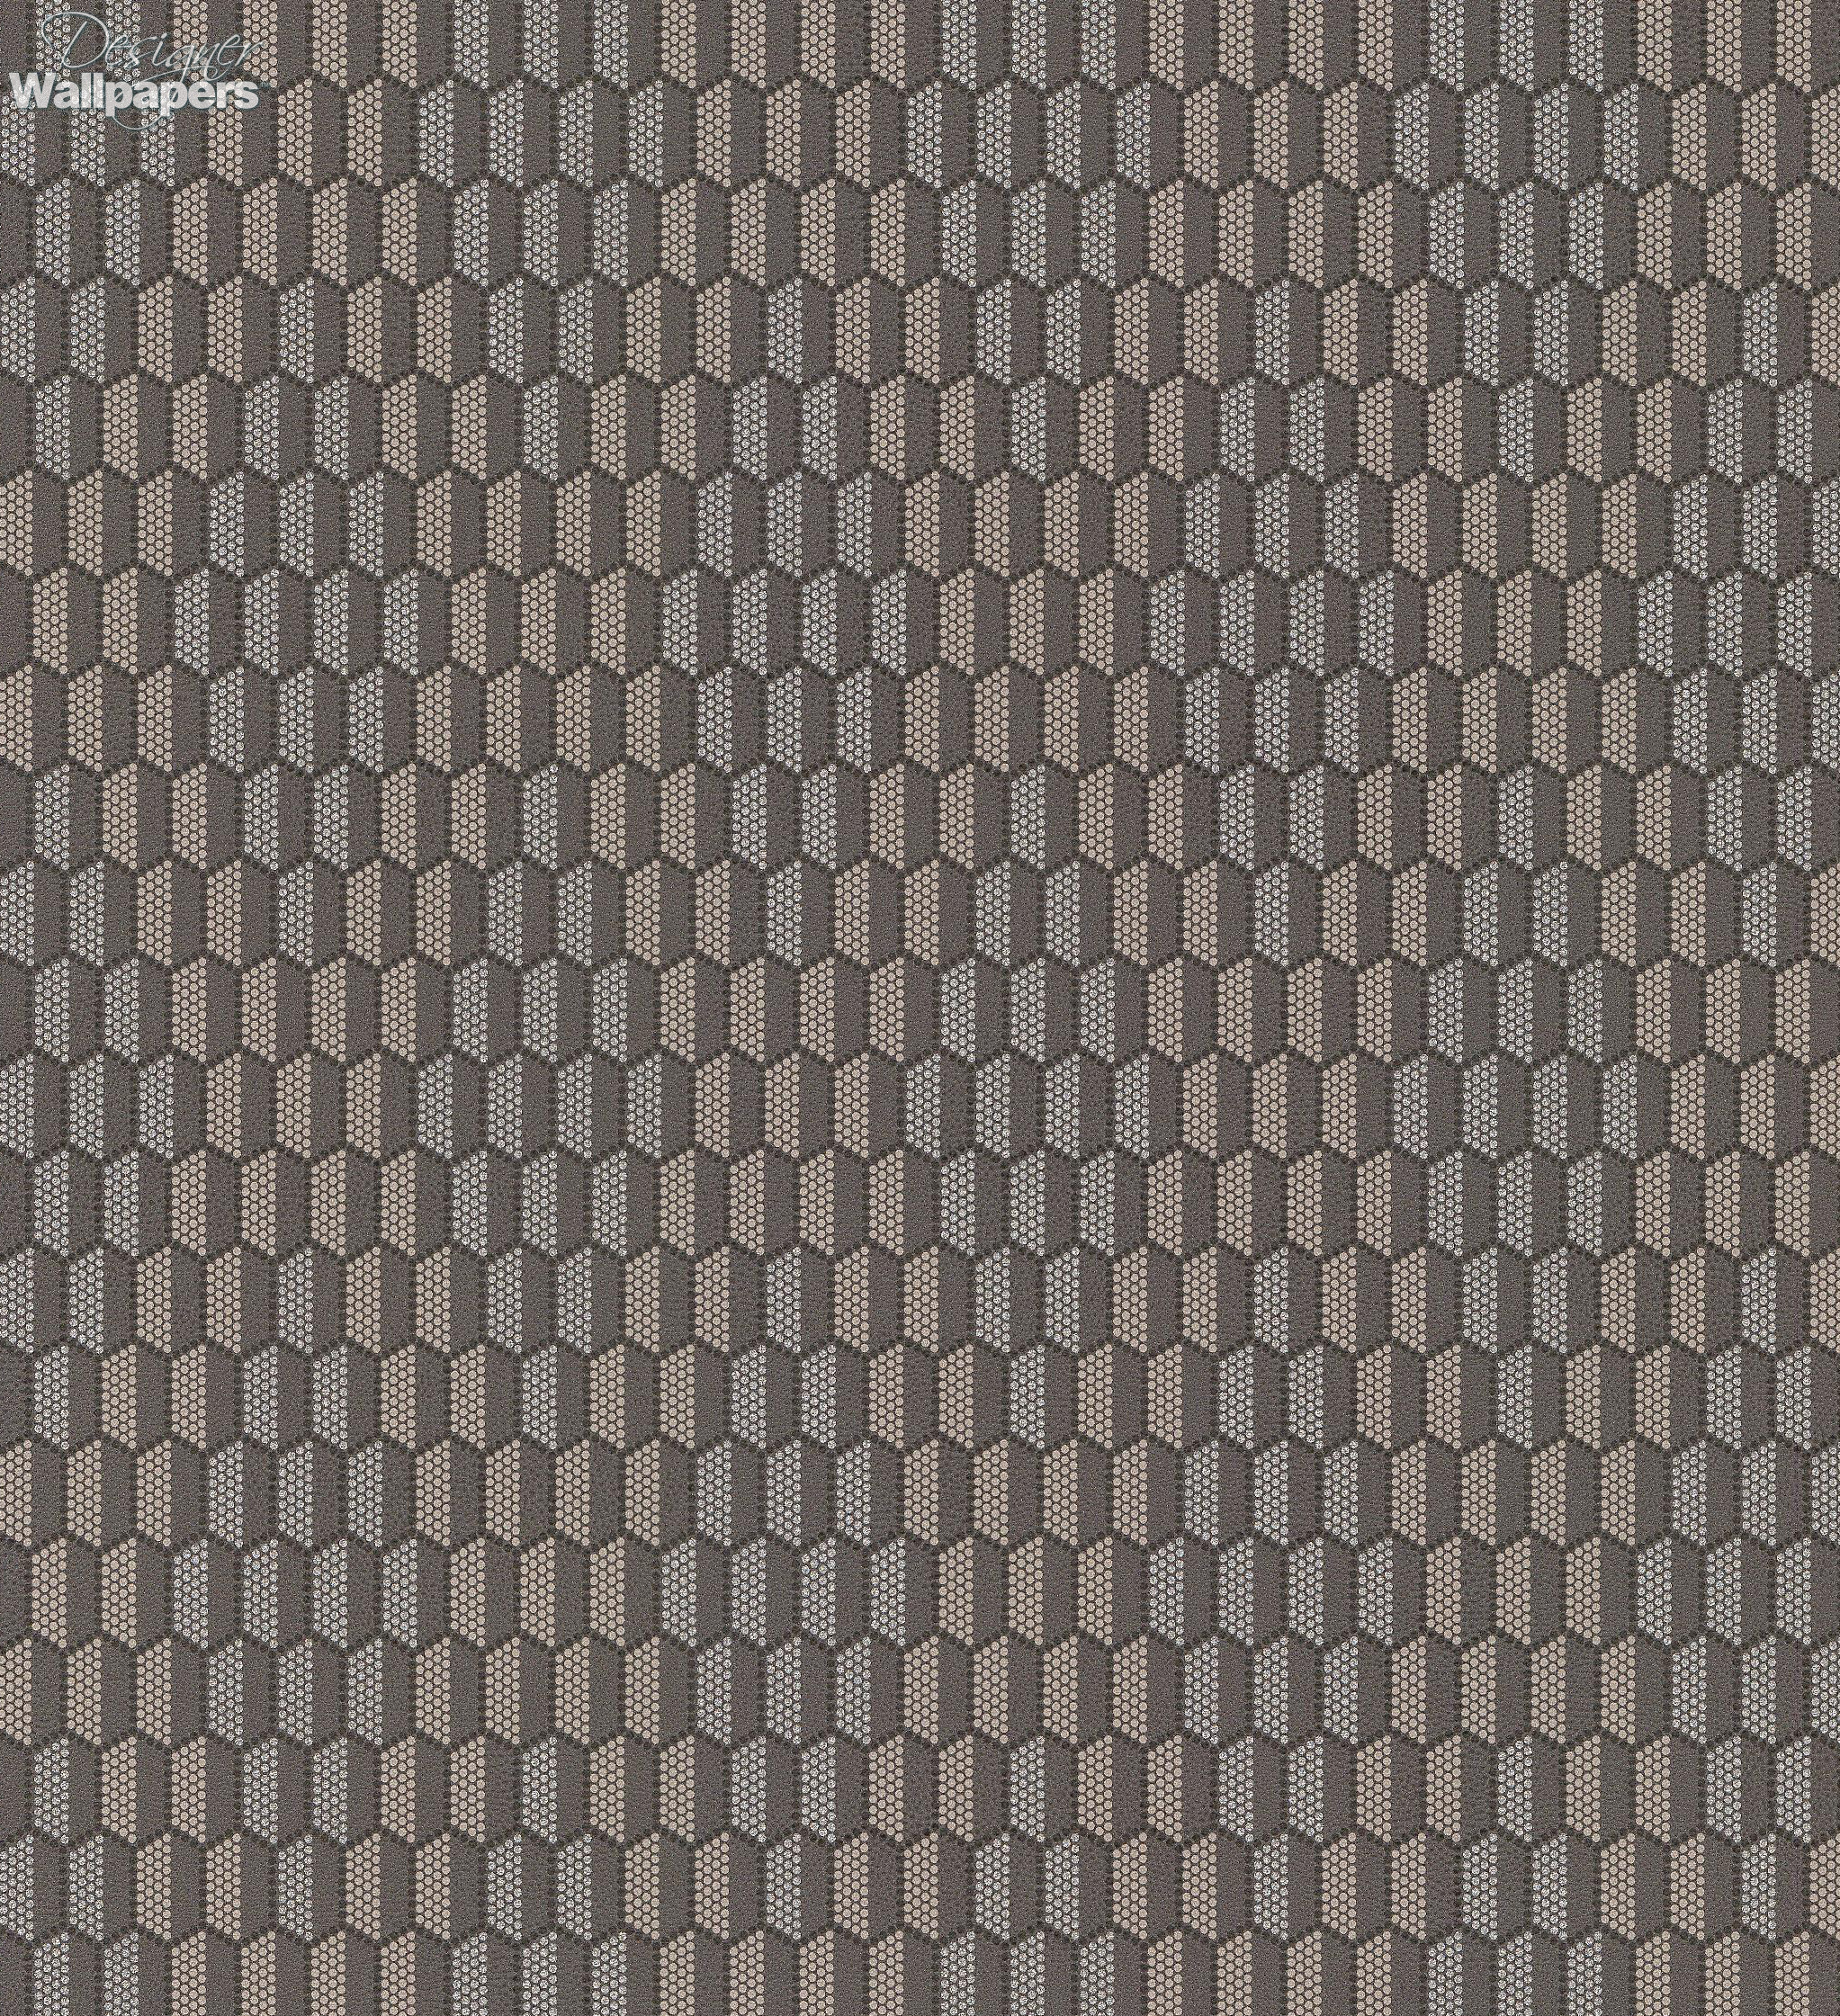 Details 79+ honeycomb wallpaper blue latest - 3tdesign.edu.vn